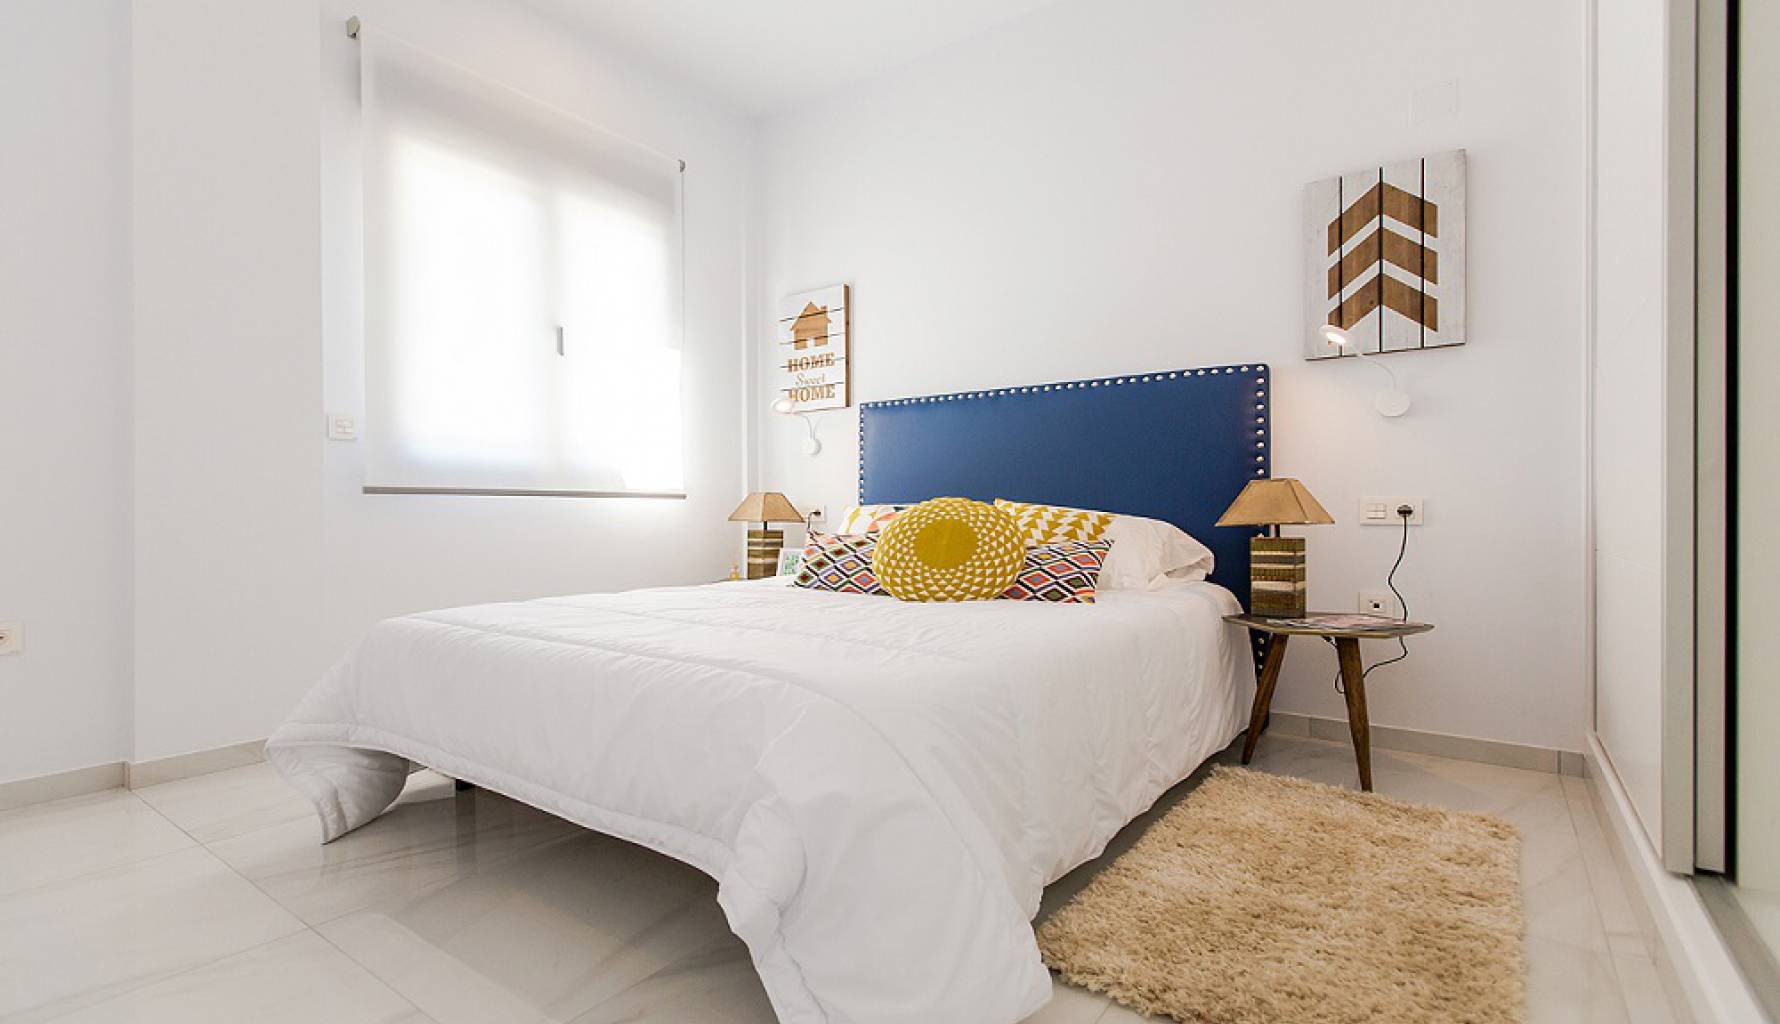 Dormitorio | Villas premium modernas en venta en Bigastro - Alicante